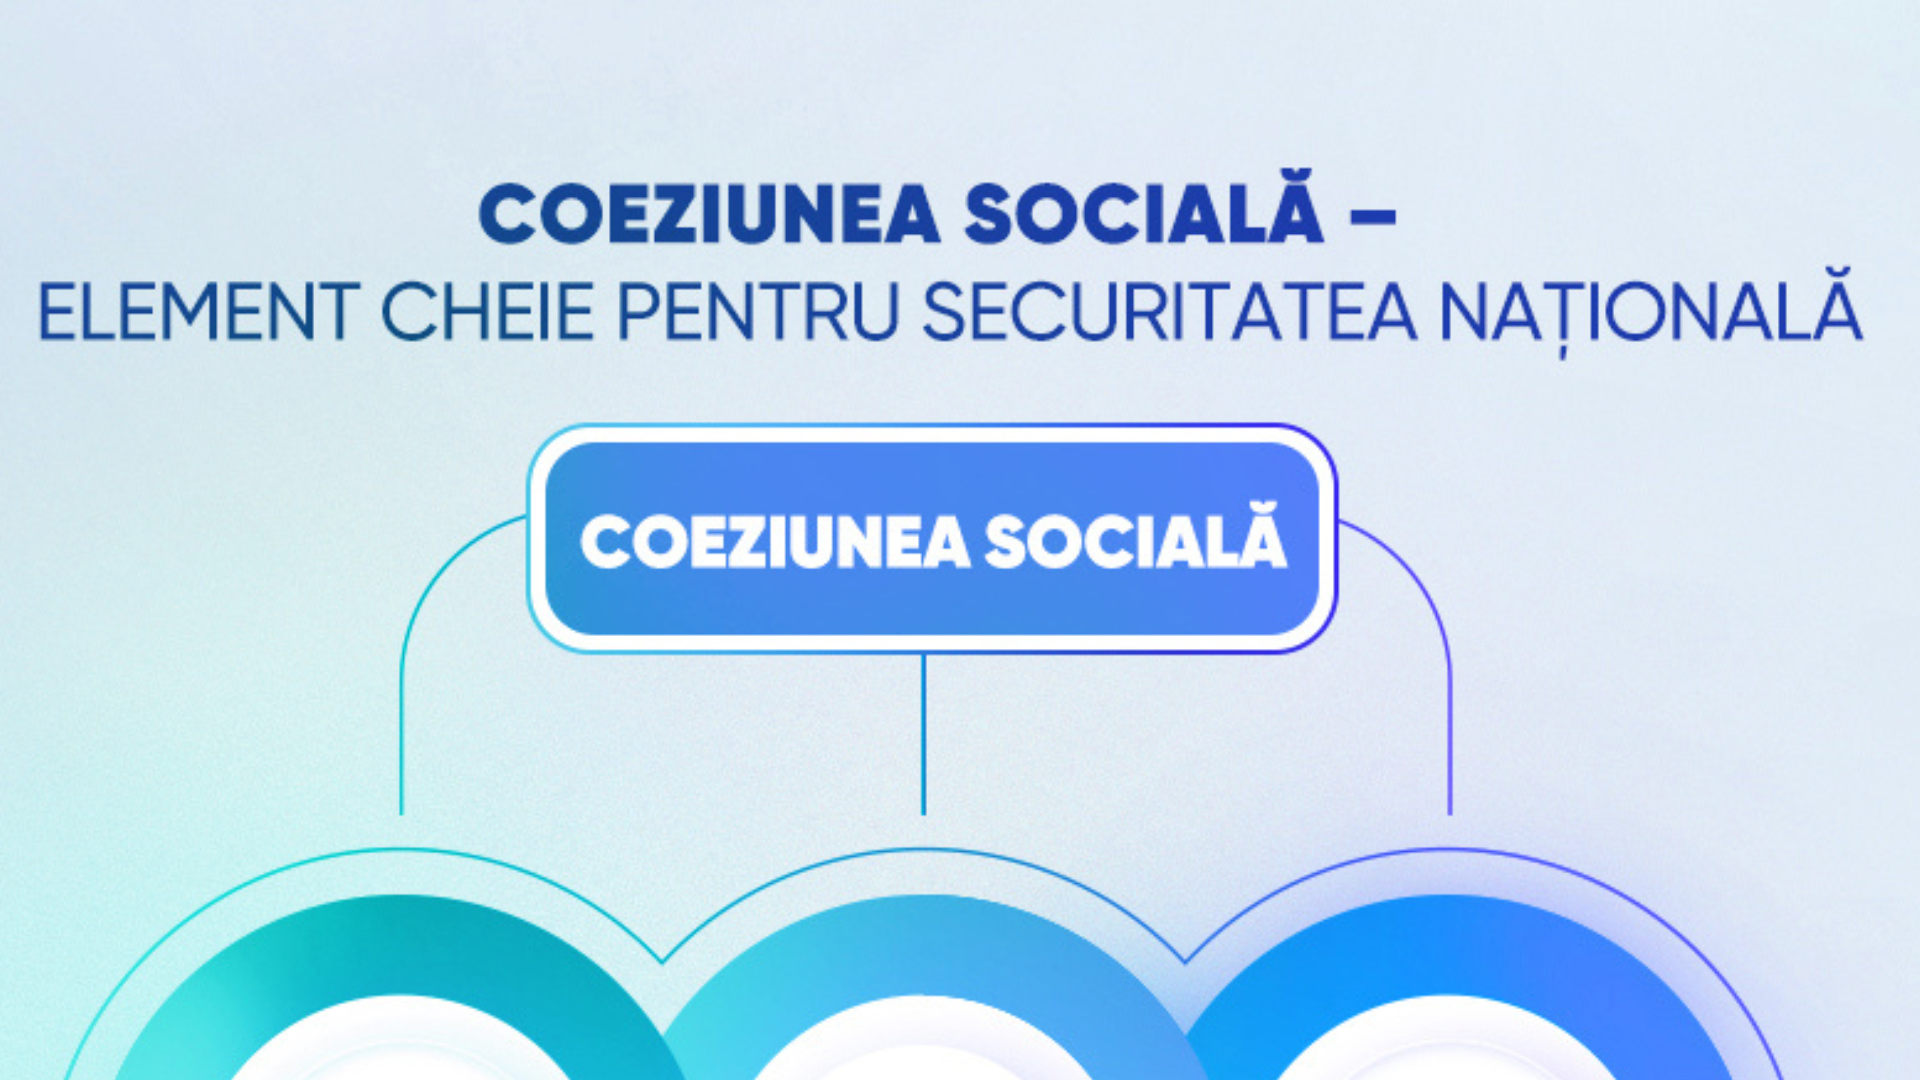 COEZIUNEA SOCIALĂ – ELEMENT CHEIE PENTRU SECURITATEA NAȚIONALĂ